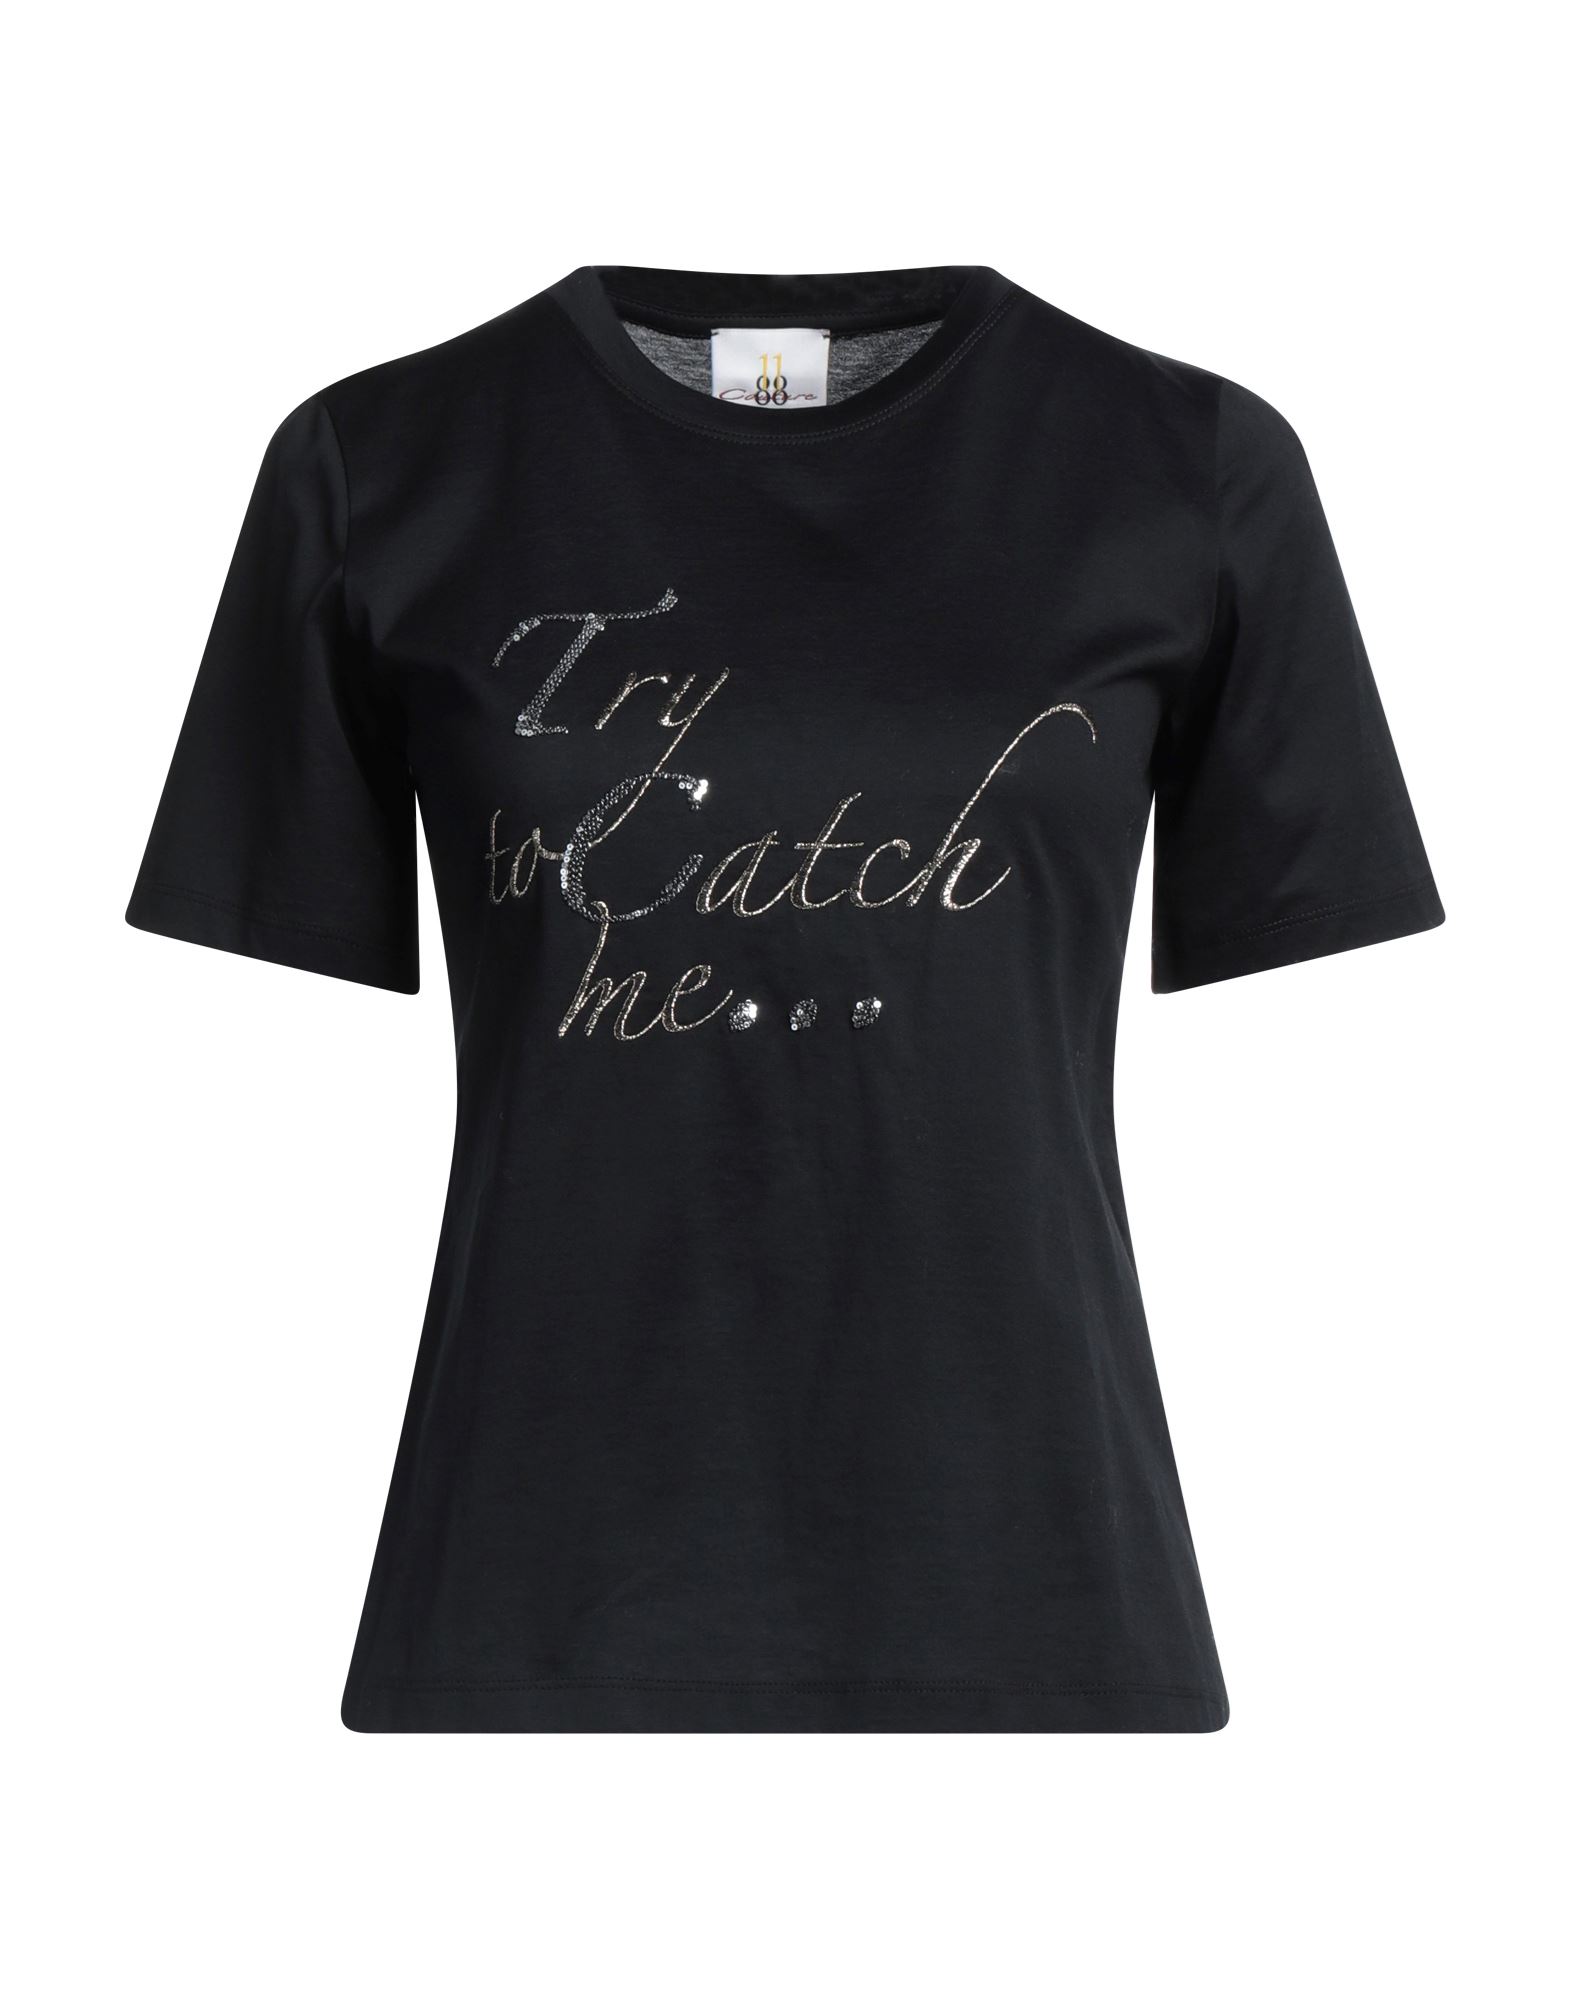 Eleven88 Woman T-shirt Black Size S Cotton